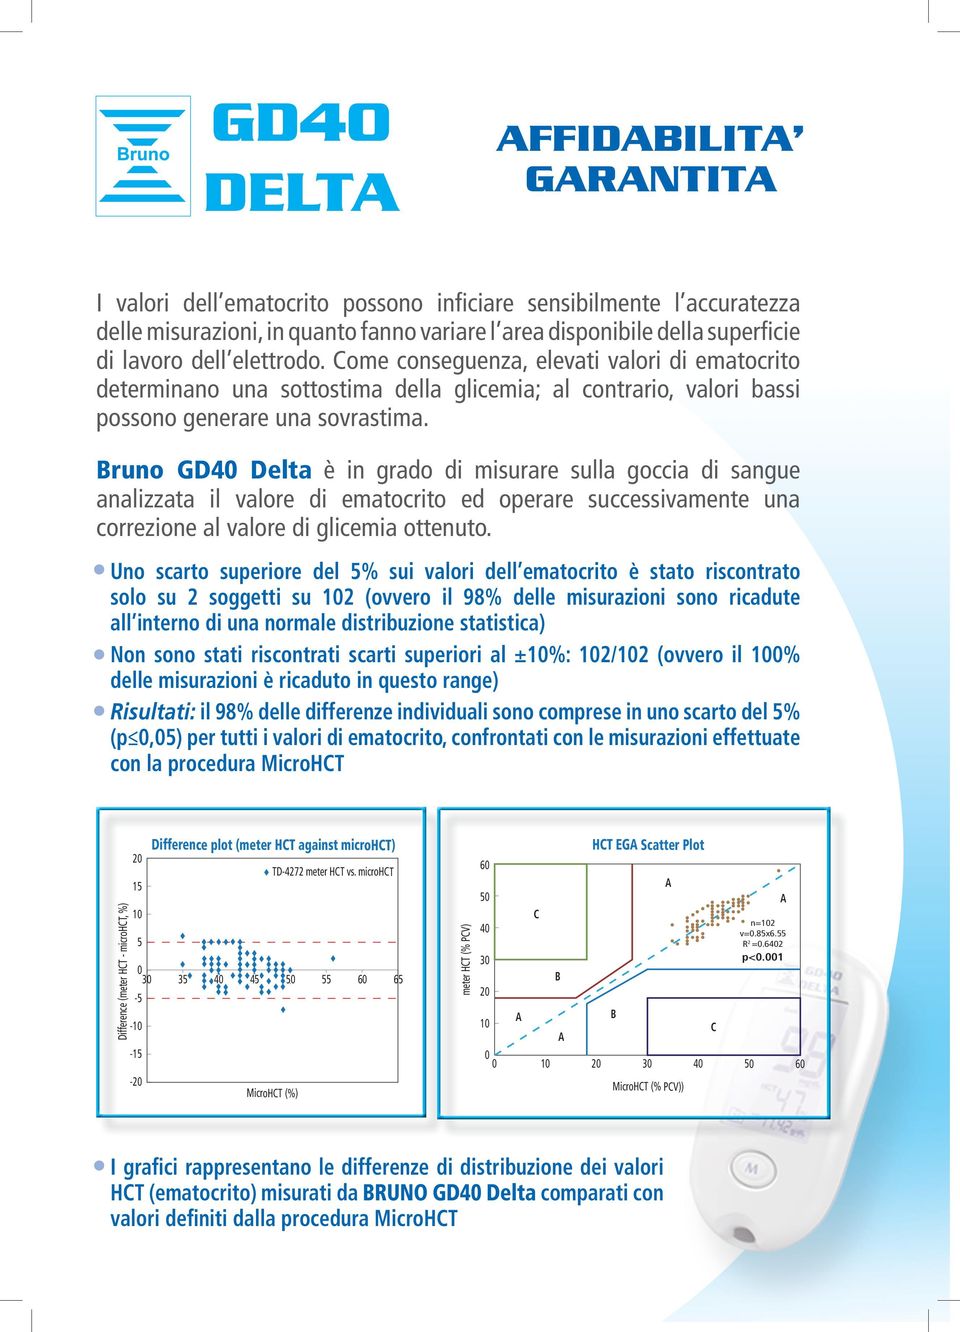 Bruno GD40 Delta è in grado di misurare sulla goccia di sangue analizzata il valore di ematocrito ed operare successivamente una correzione al valore di glicemia ottenuto.